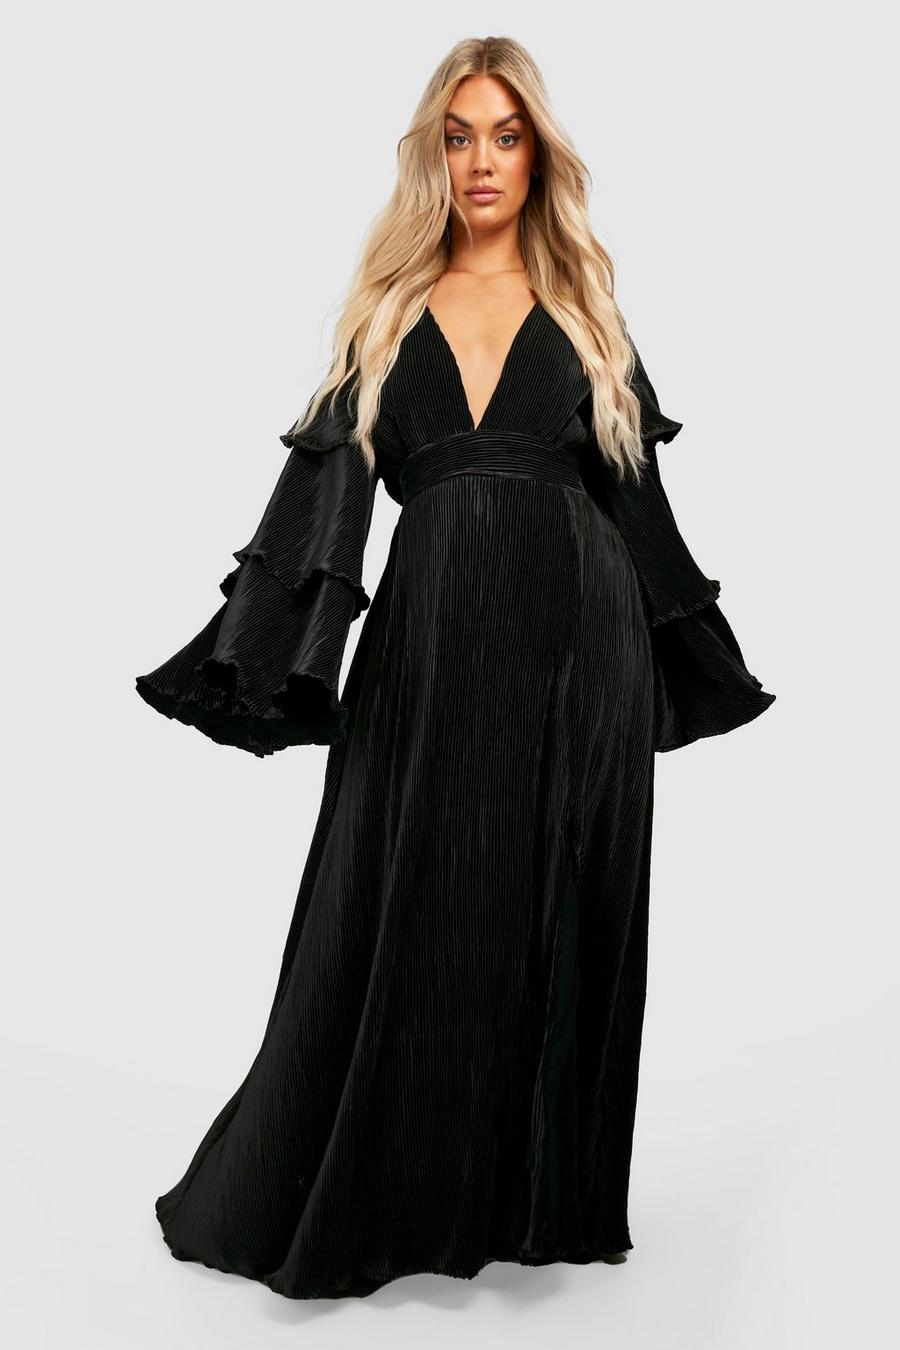 https://media.boohoo.com/i/boohoo/gzz20019_black_xl/female-black-plus-layered-ruffle-sleeve-maxi-dress/?w=900&qlt=default&fmt.jp2.qlt=70&fmt=auto&sm=fit